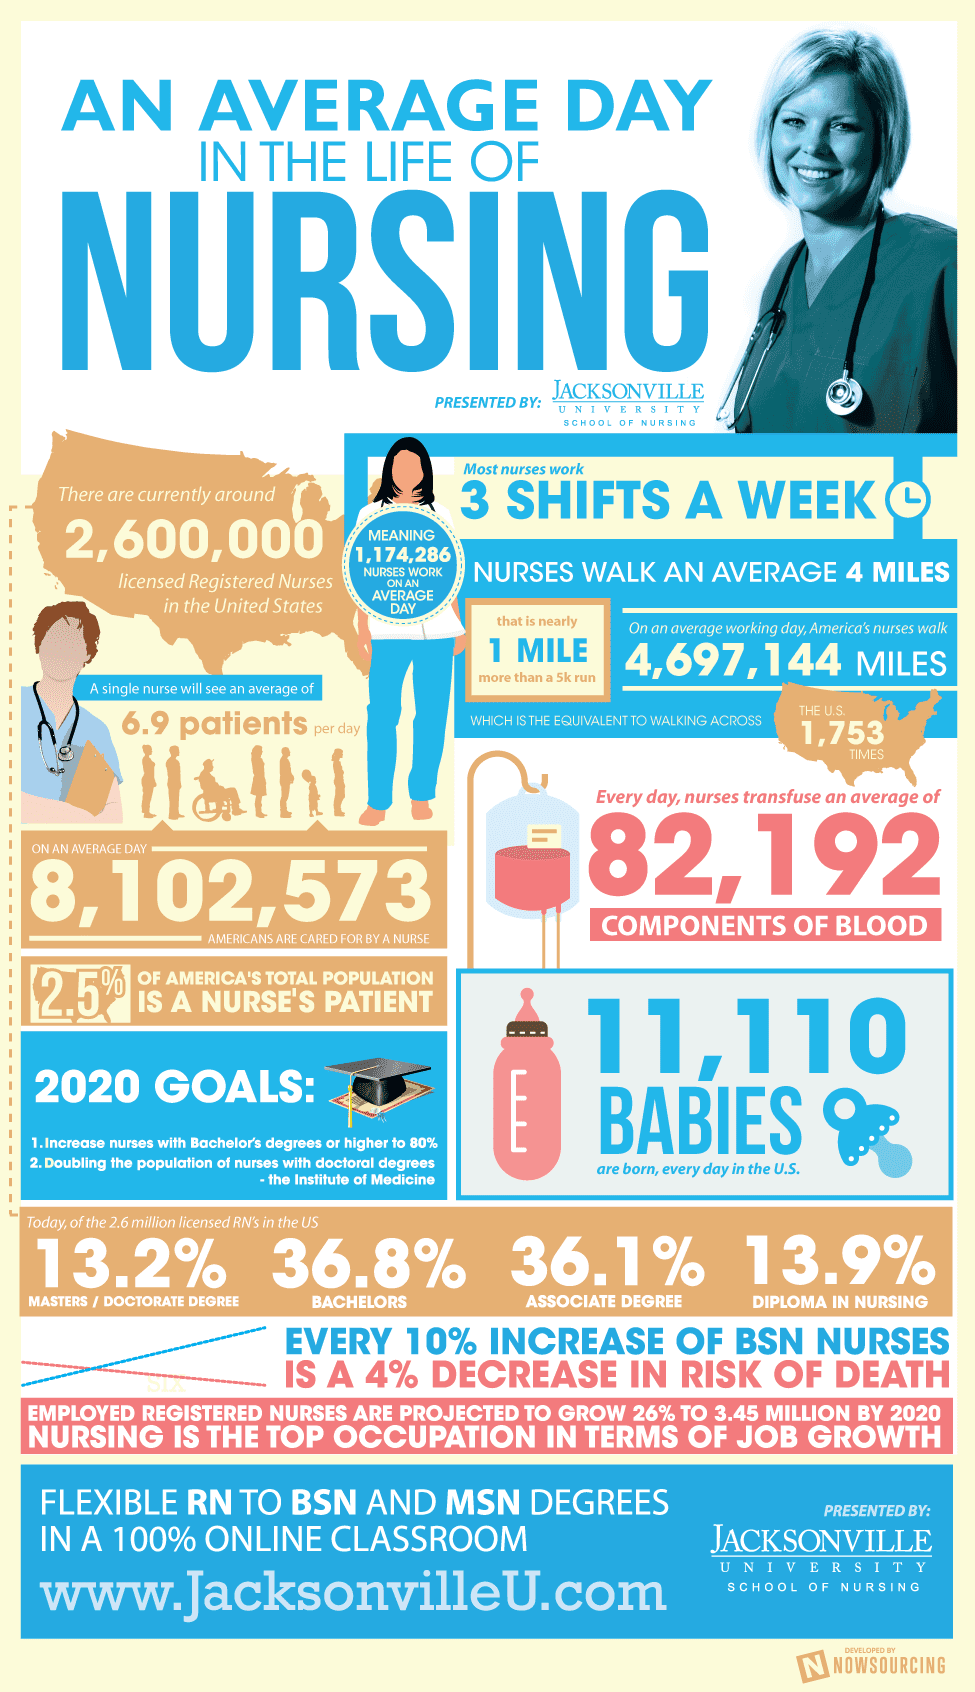 Nursing infographic in full